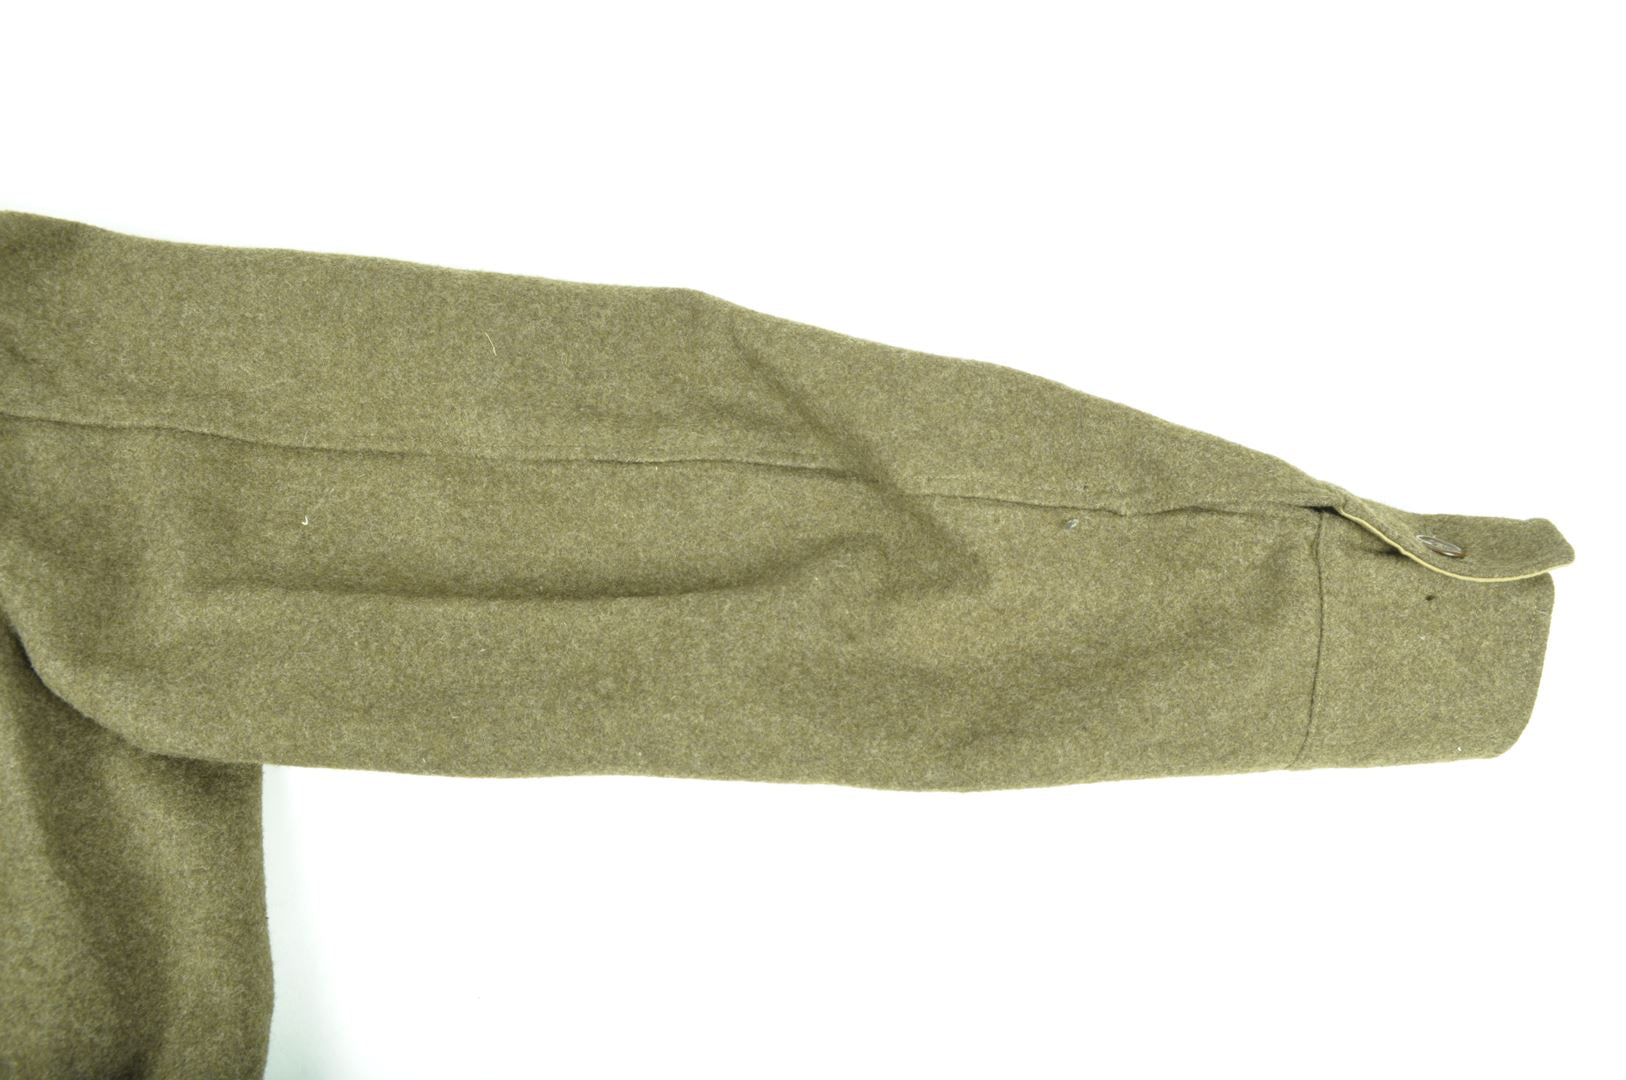 Blouson Battle Dress "American Made War Aid" / daté 1943